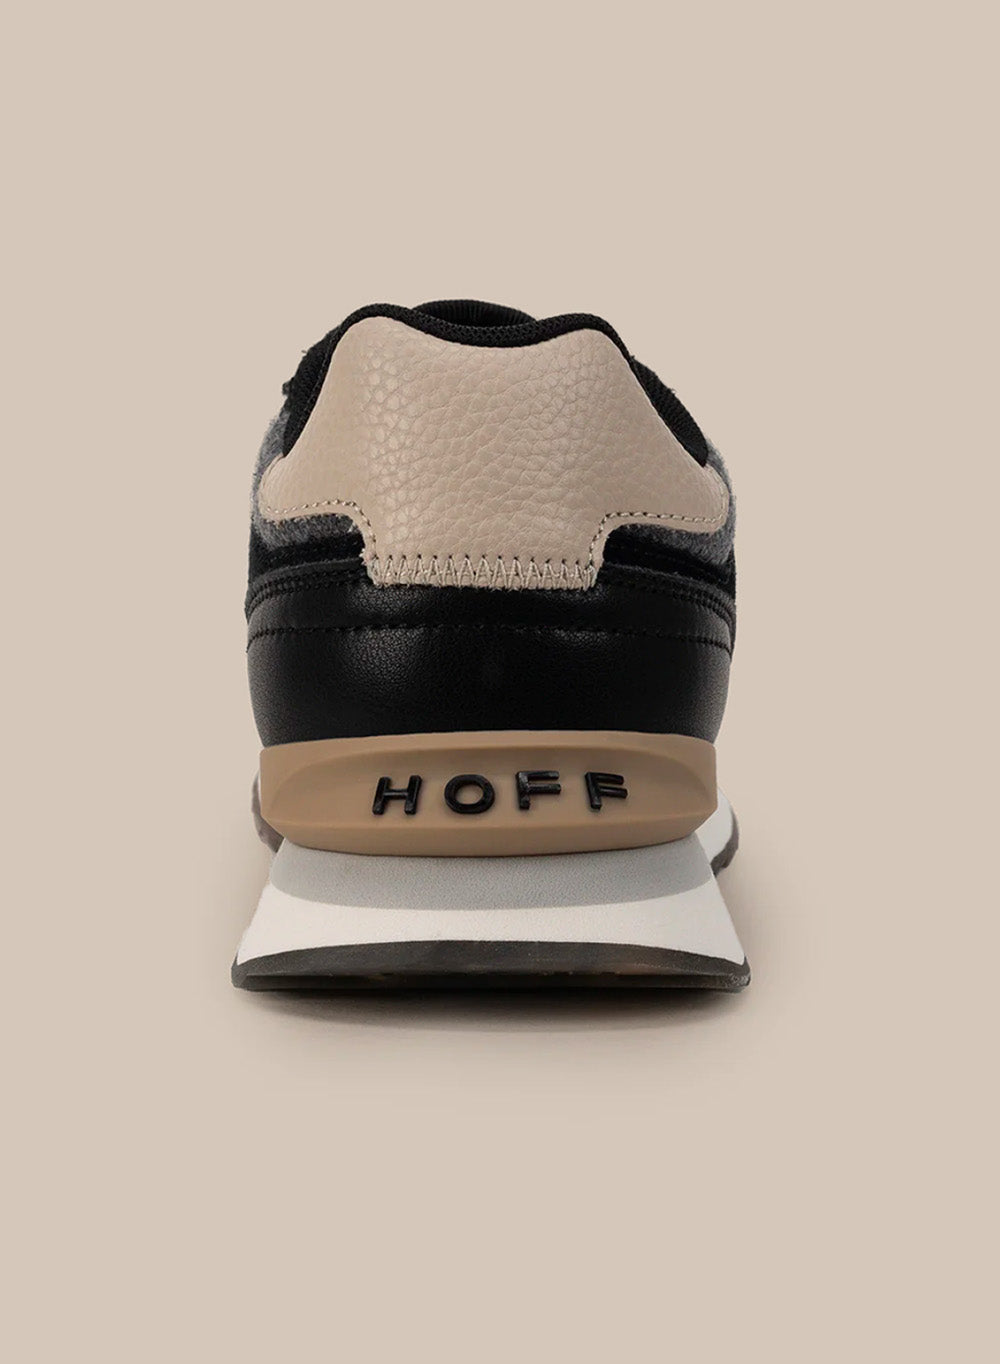 Sneakers de hombre Texas by HOFF